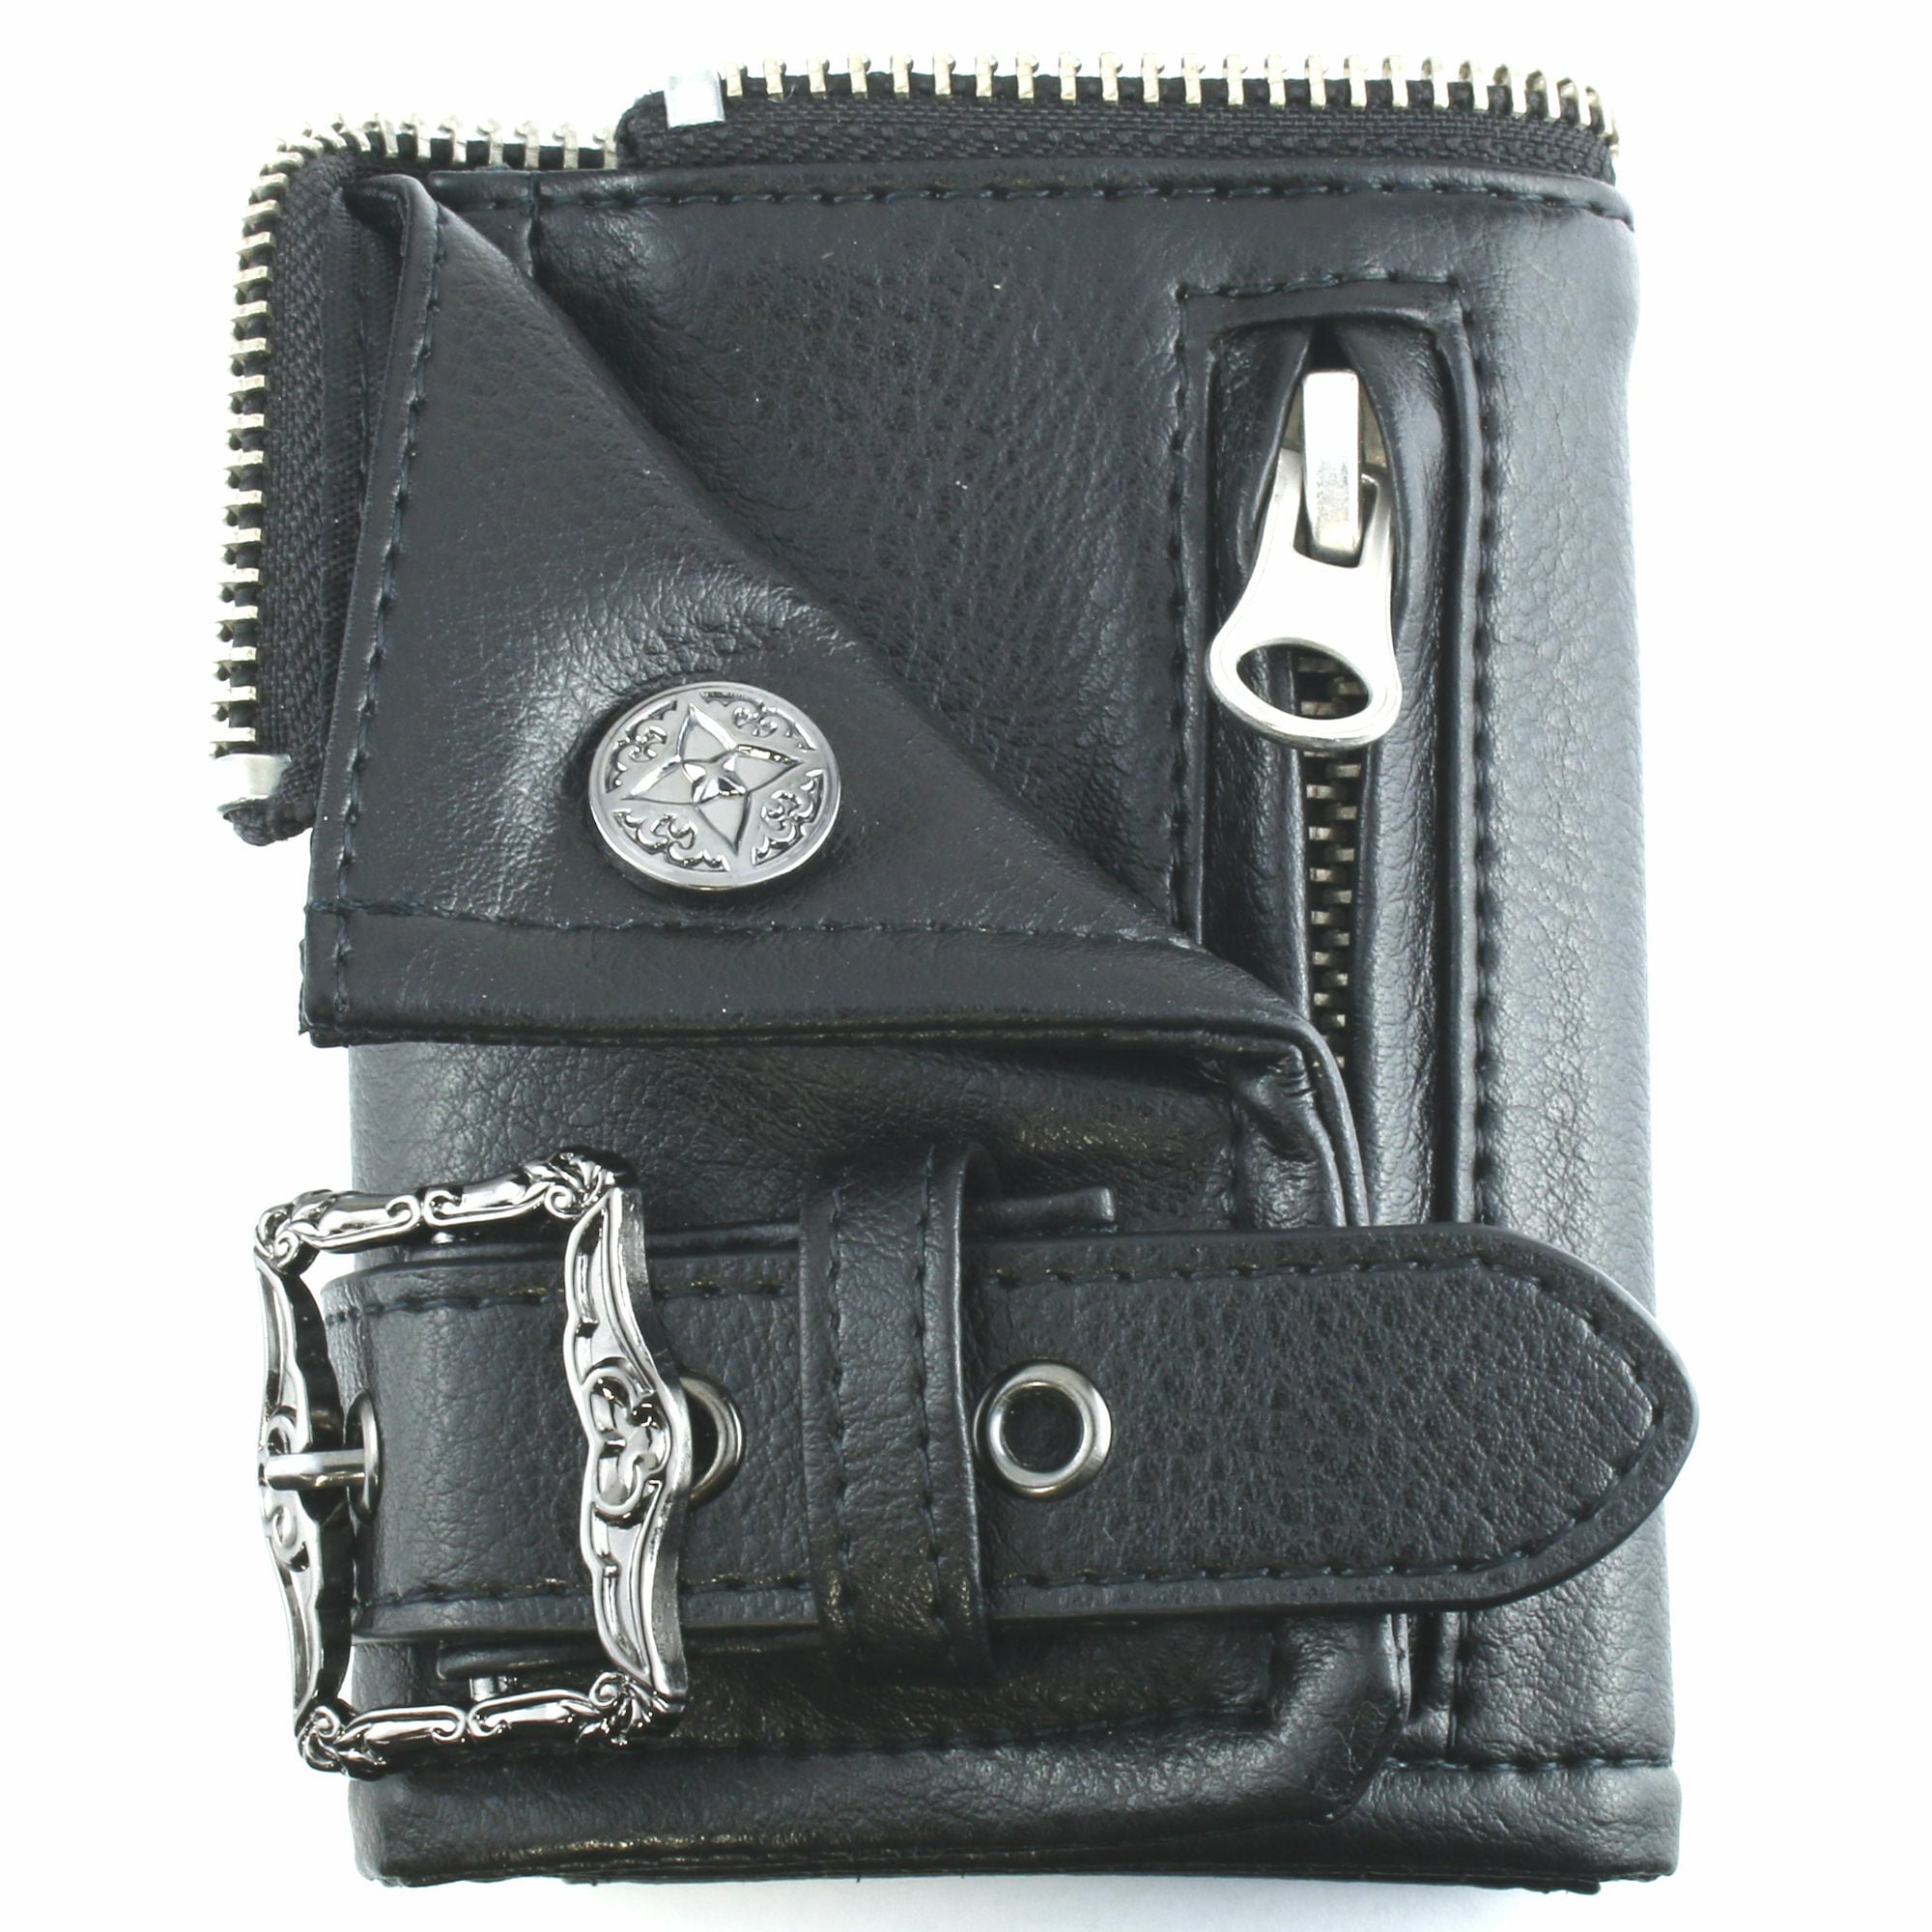 【キーホルダー売り上げランキング2位】本革ライダースキーケースウォレット ACLKC0009　Genuine leather riders key case wallet Jewelry Brand